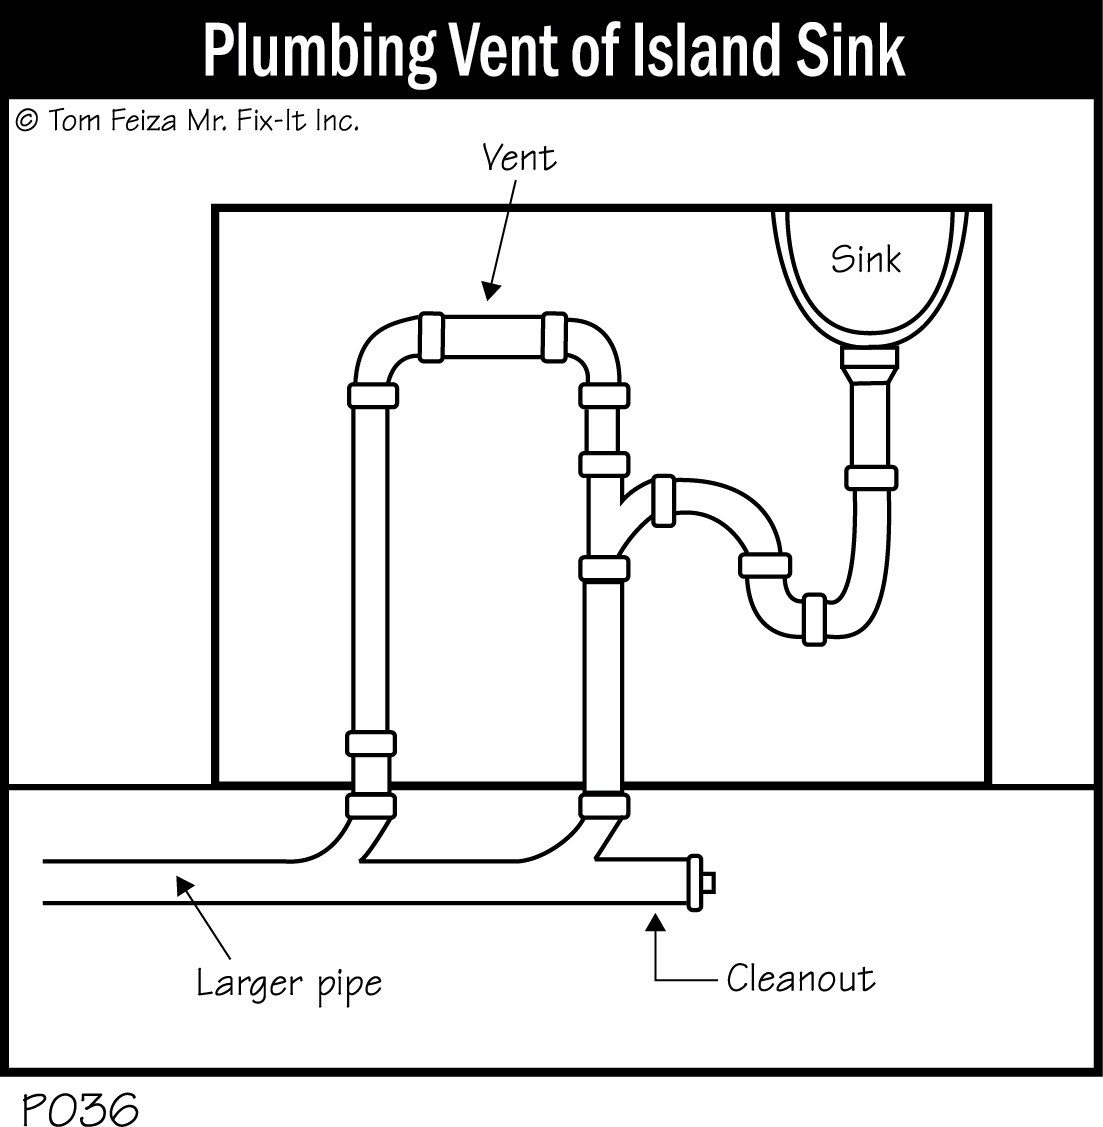 P036 - Plumbing Vent of Island Sink